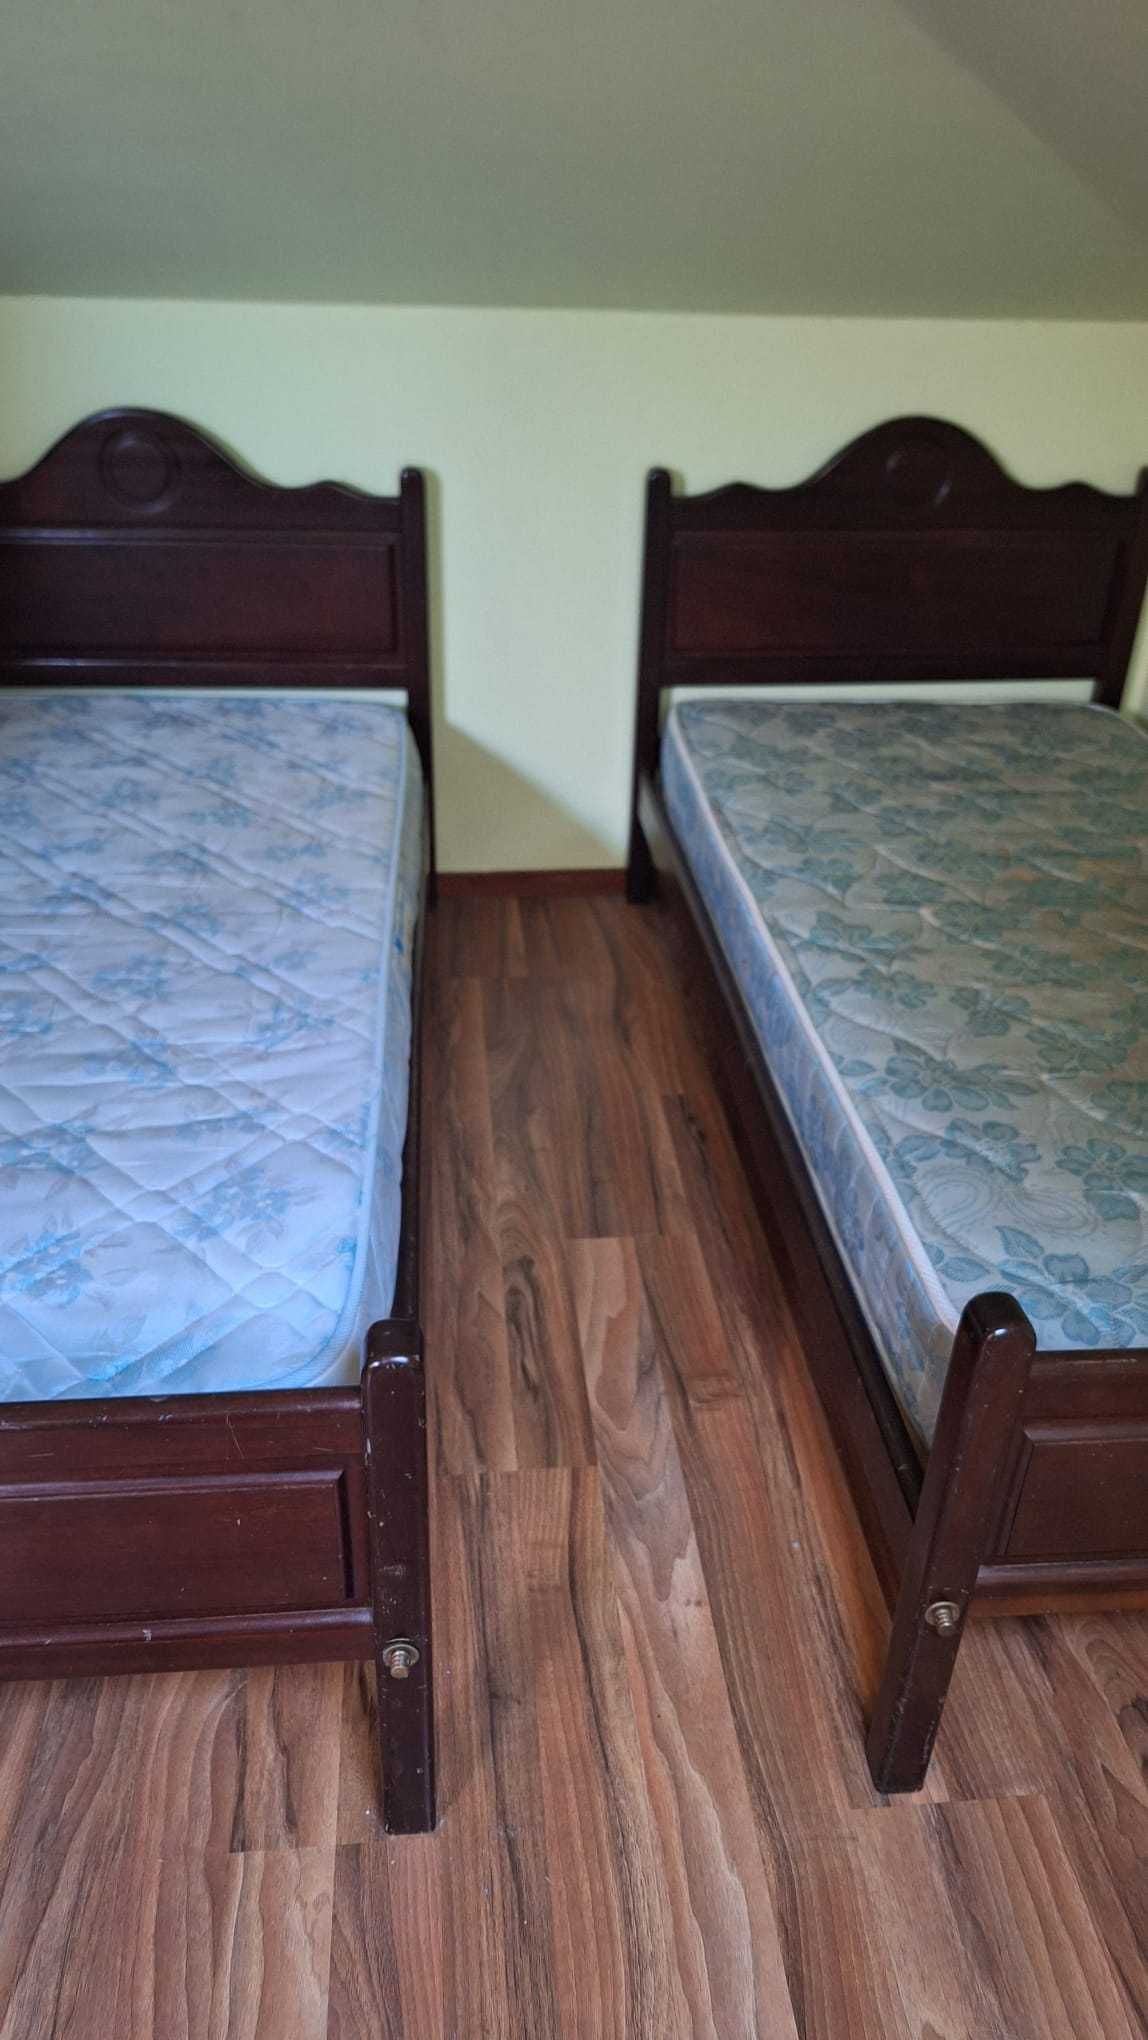 2 camas individuais em mogno + oferta dos colchões (usados)